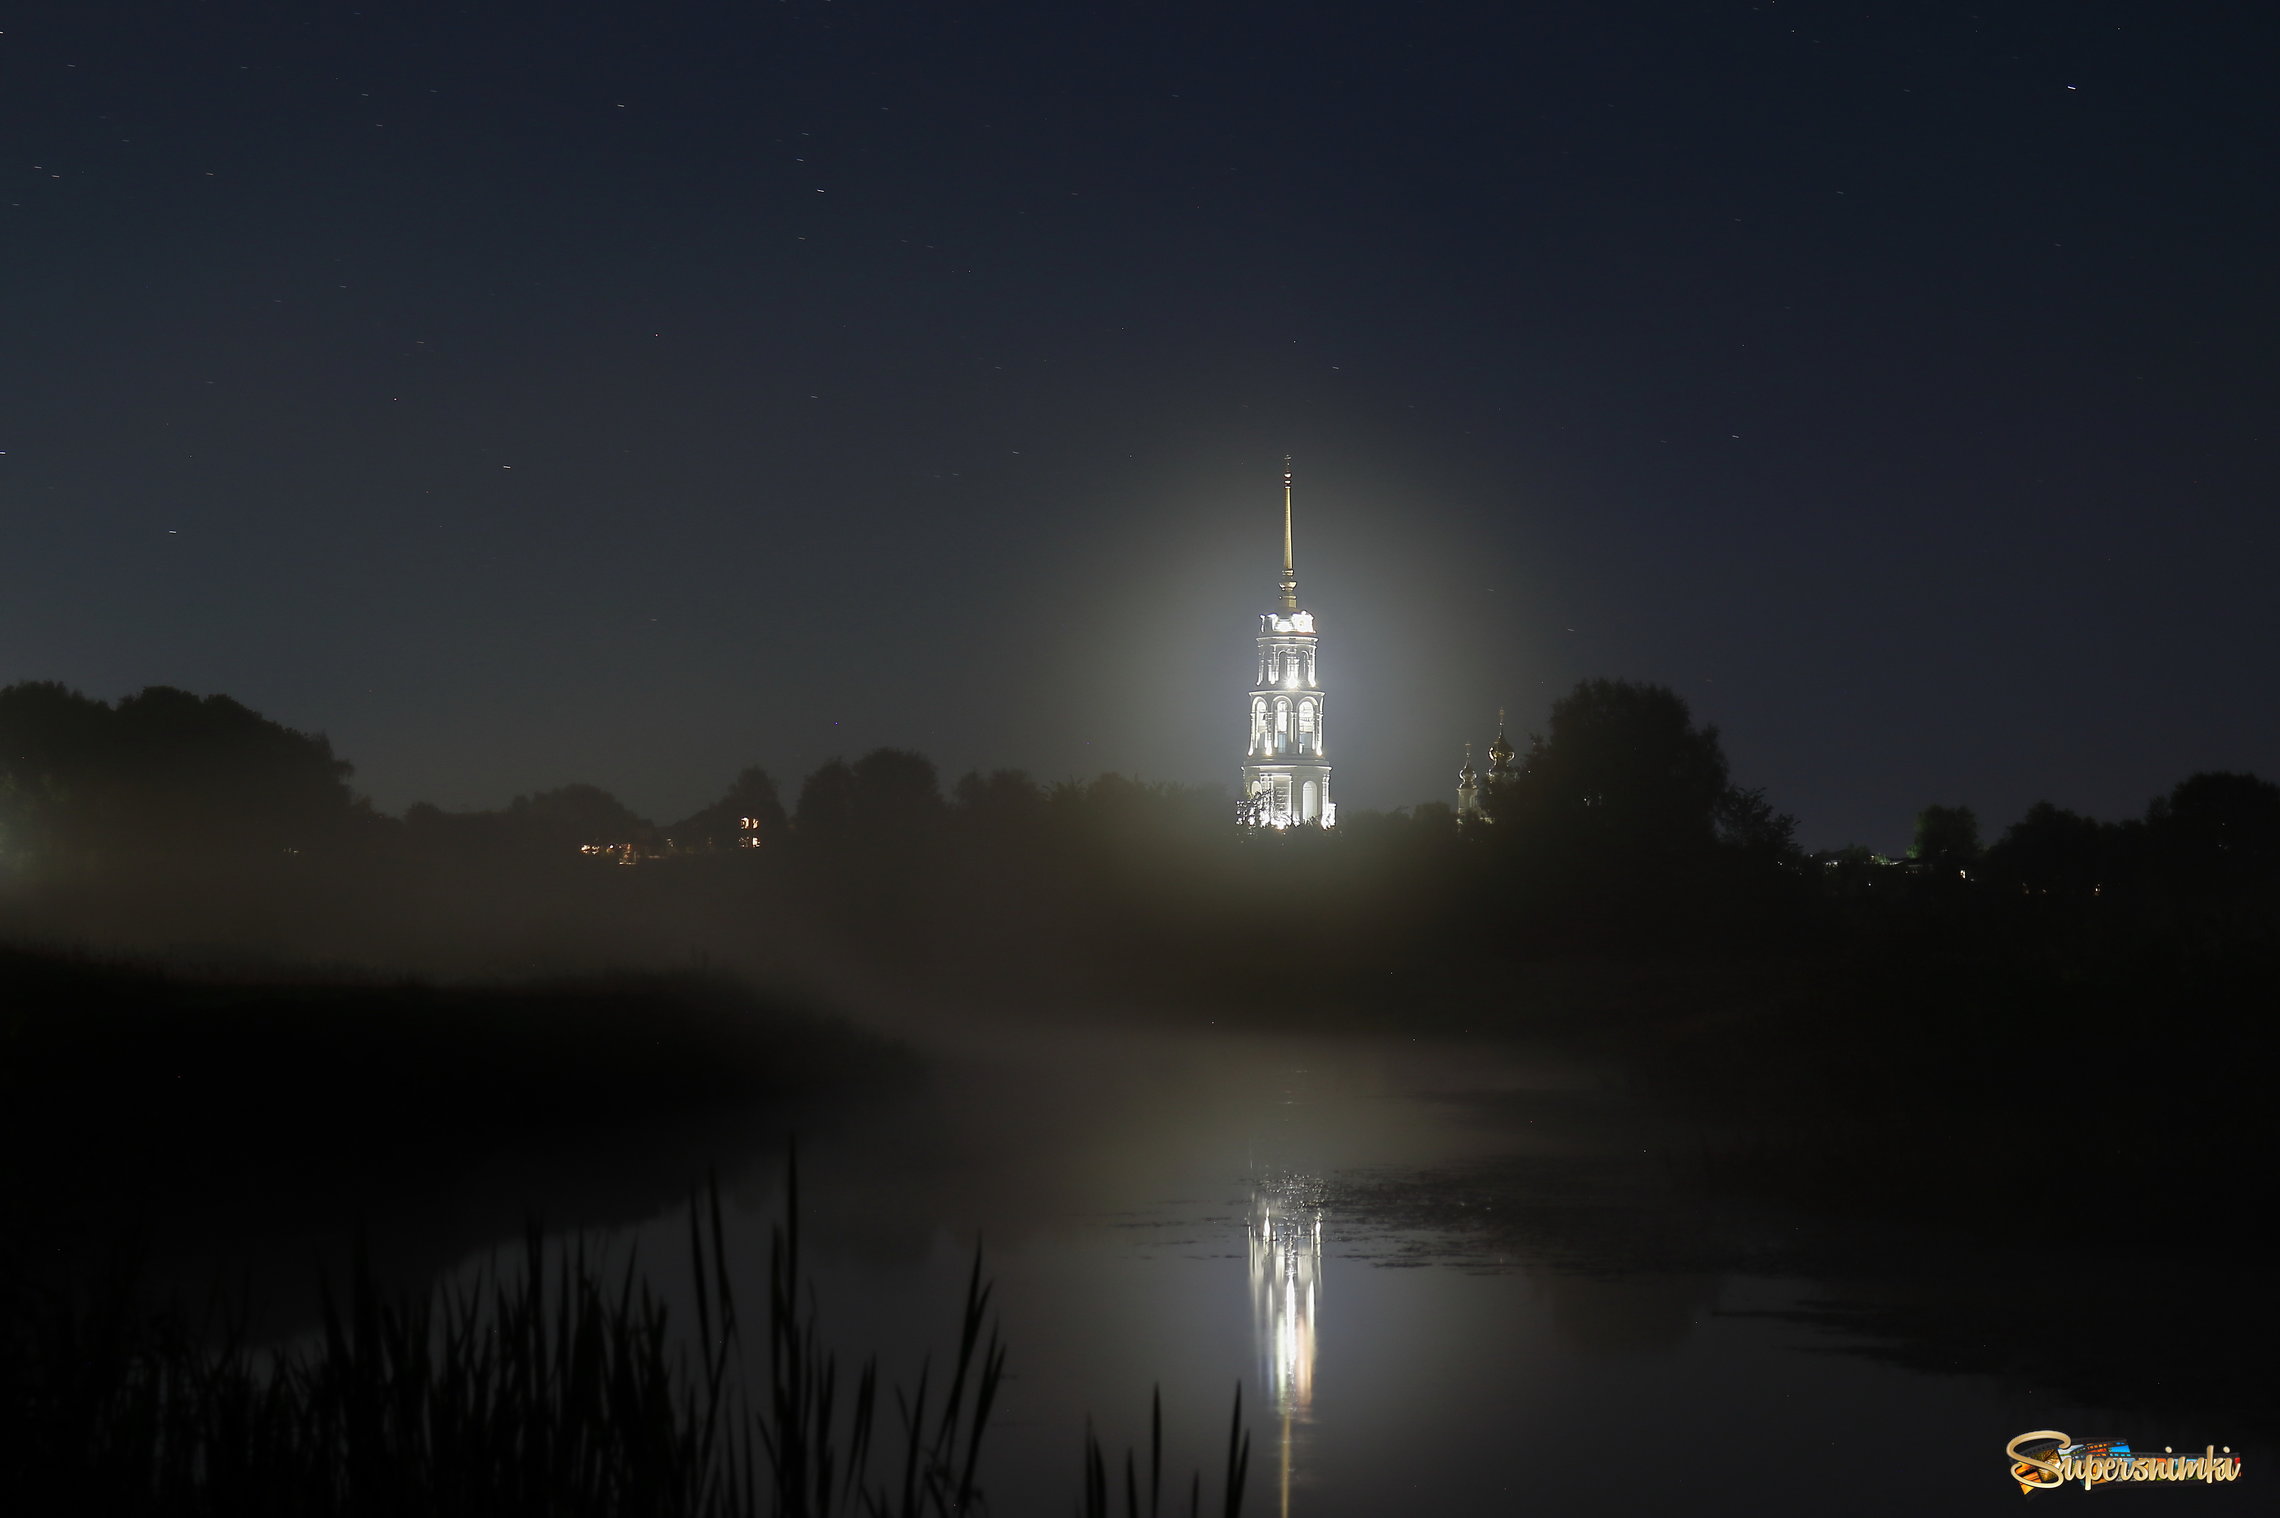  Колокольня Воскресенского собора в ночном тумане..